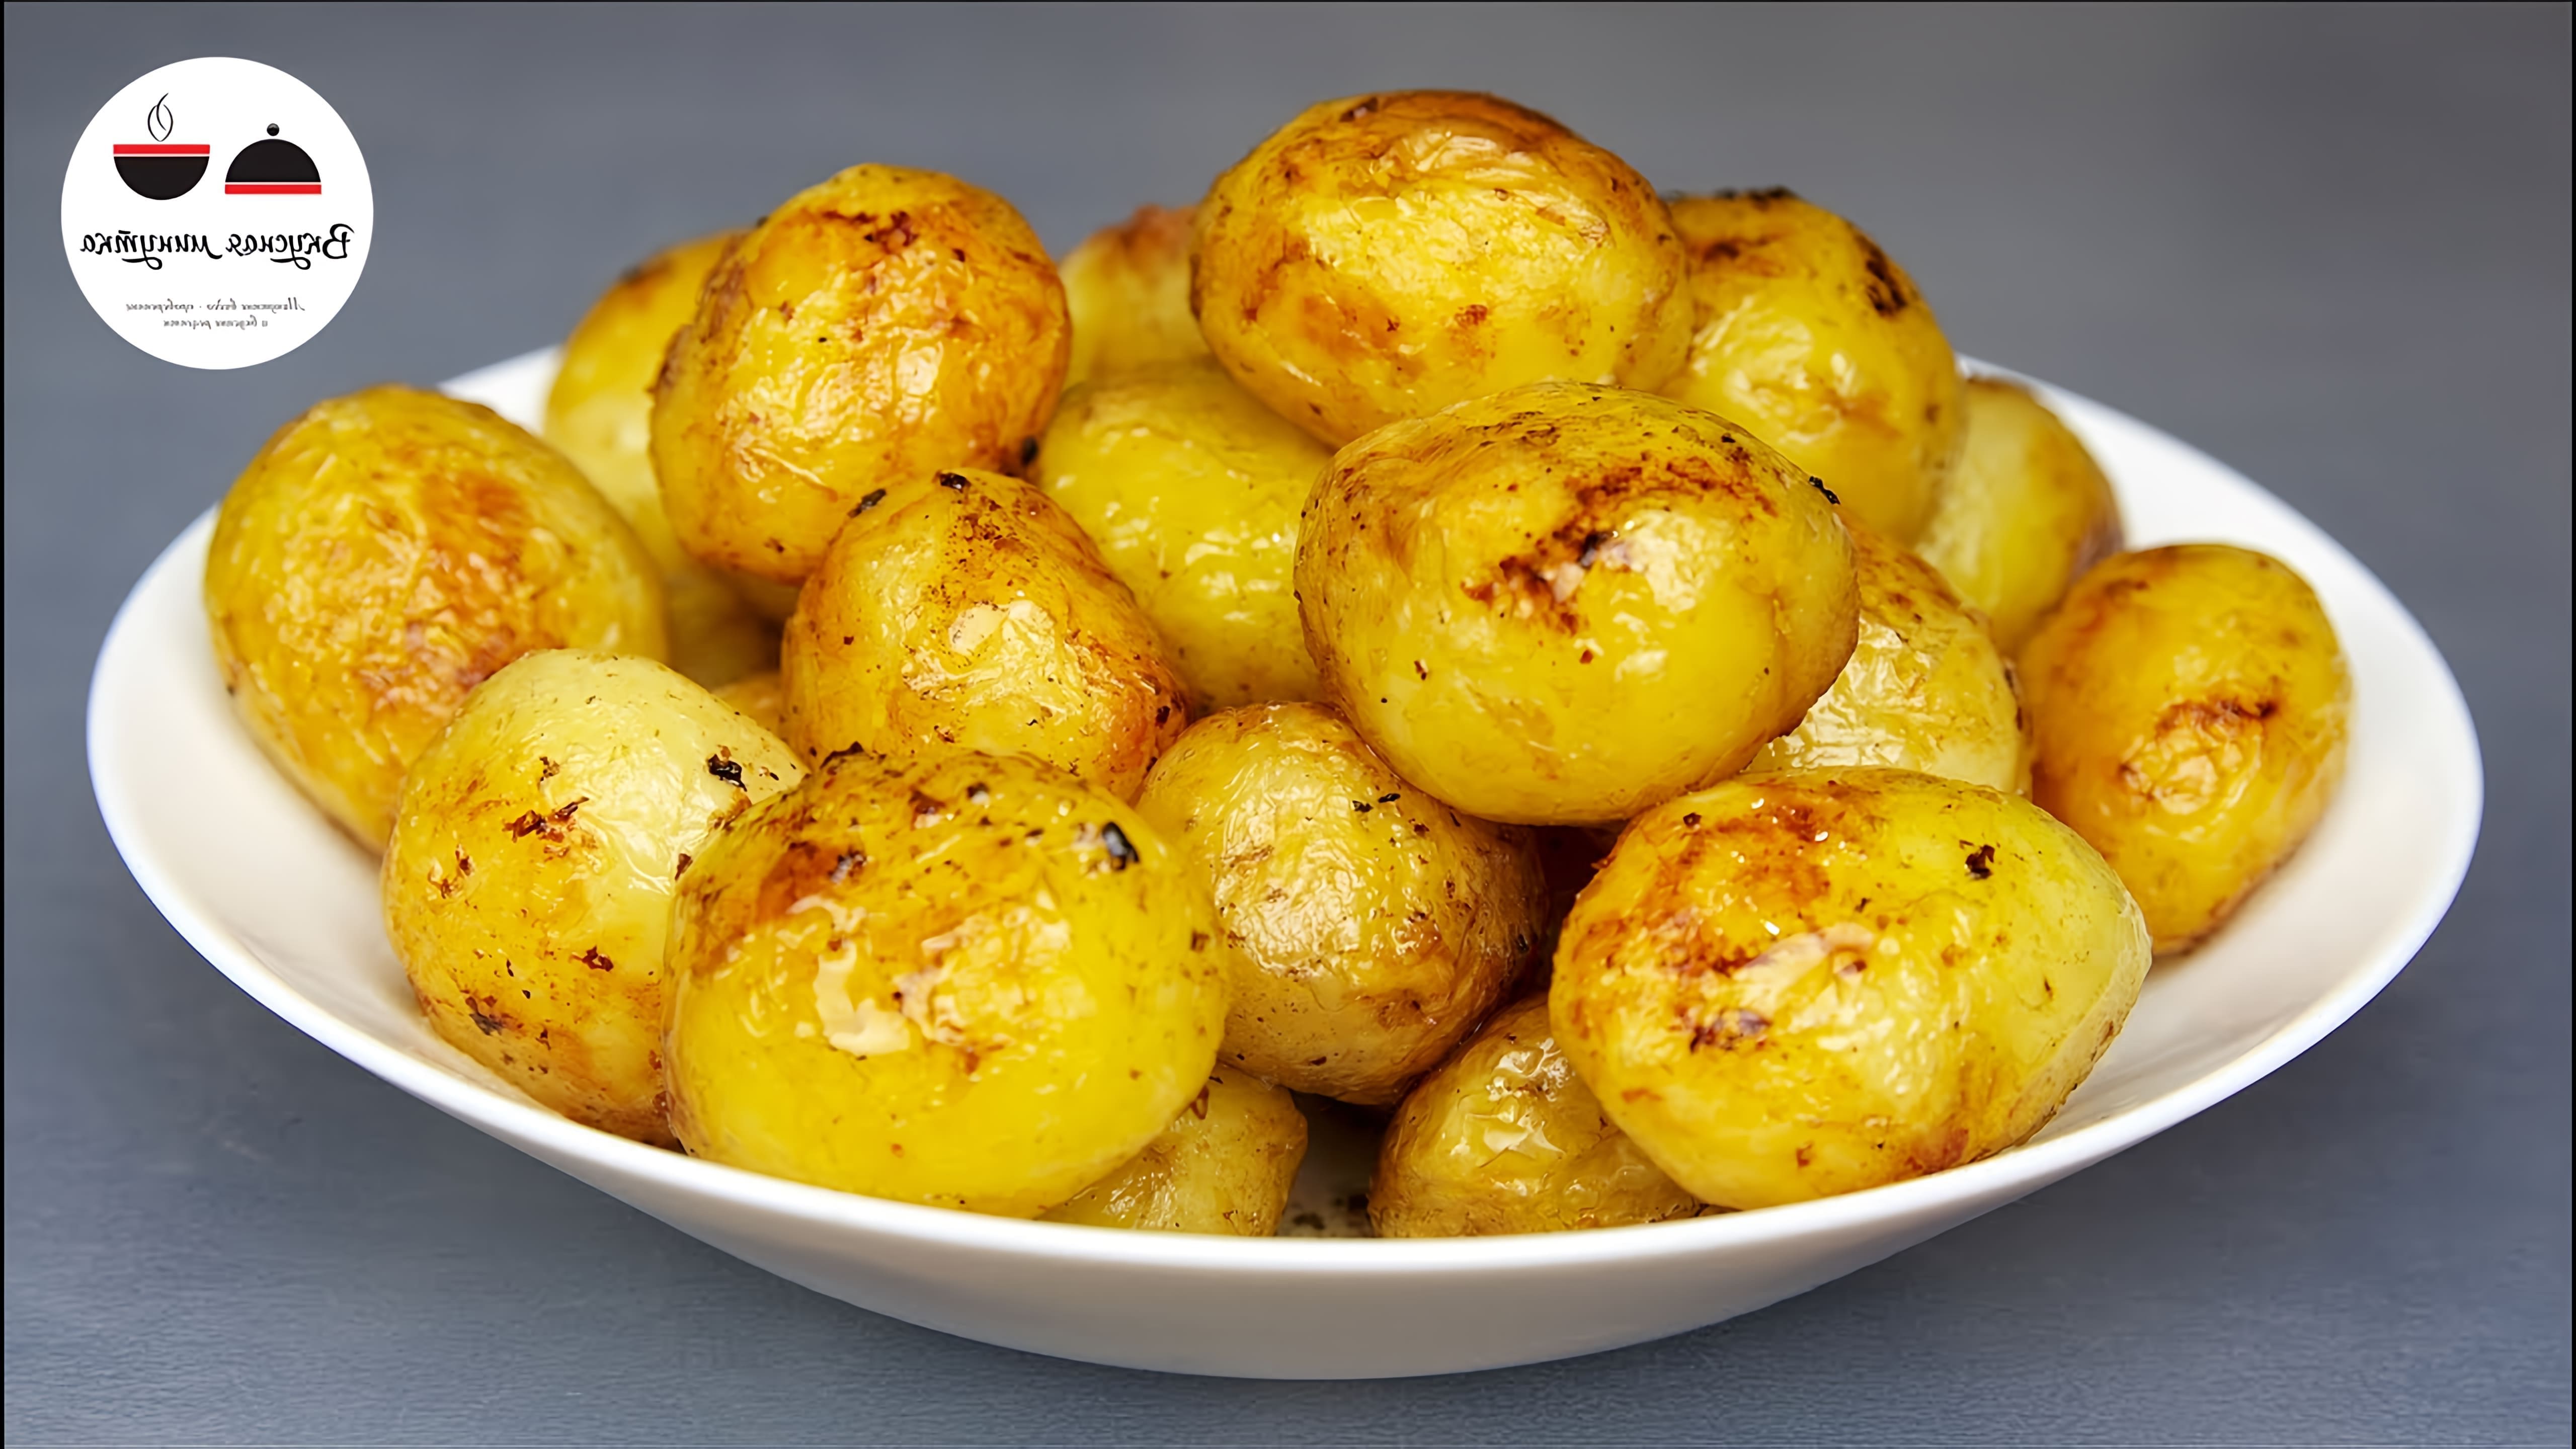 В этом видео-ролике рассказывается о секрете приготовления картофеля золотистого с супер румяной корочкой